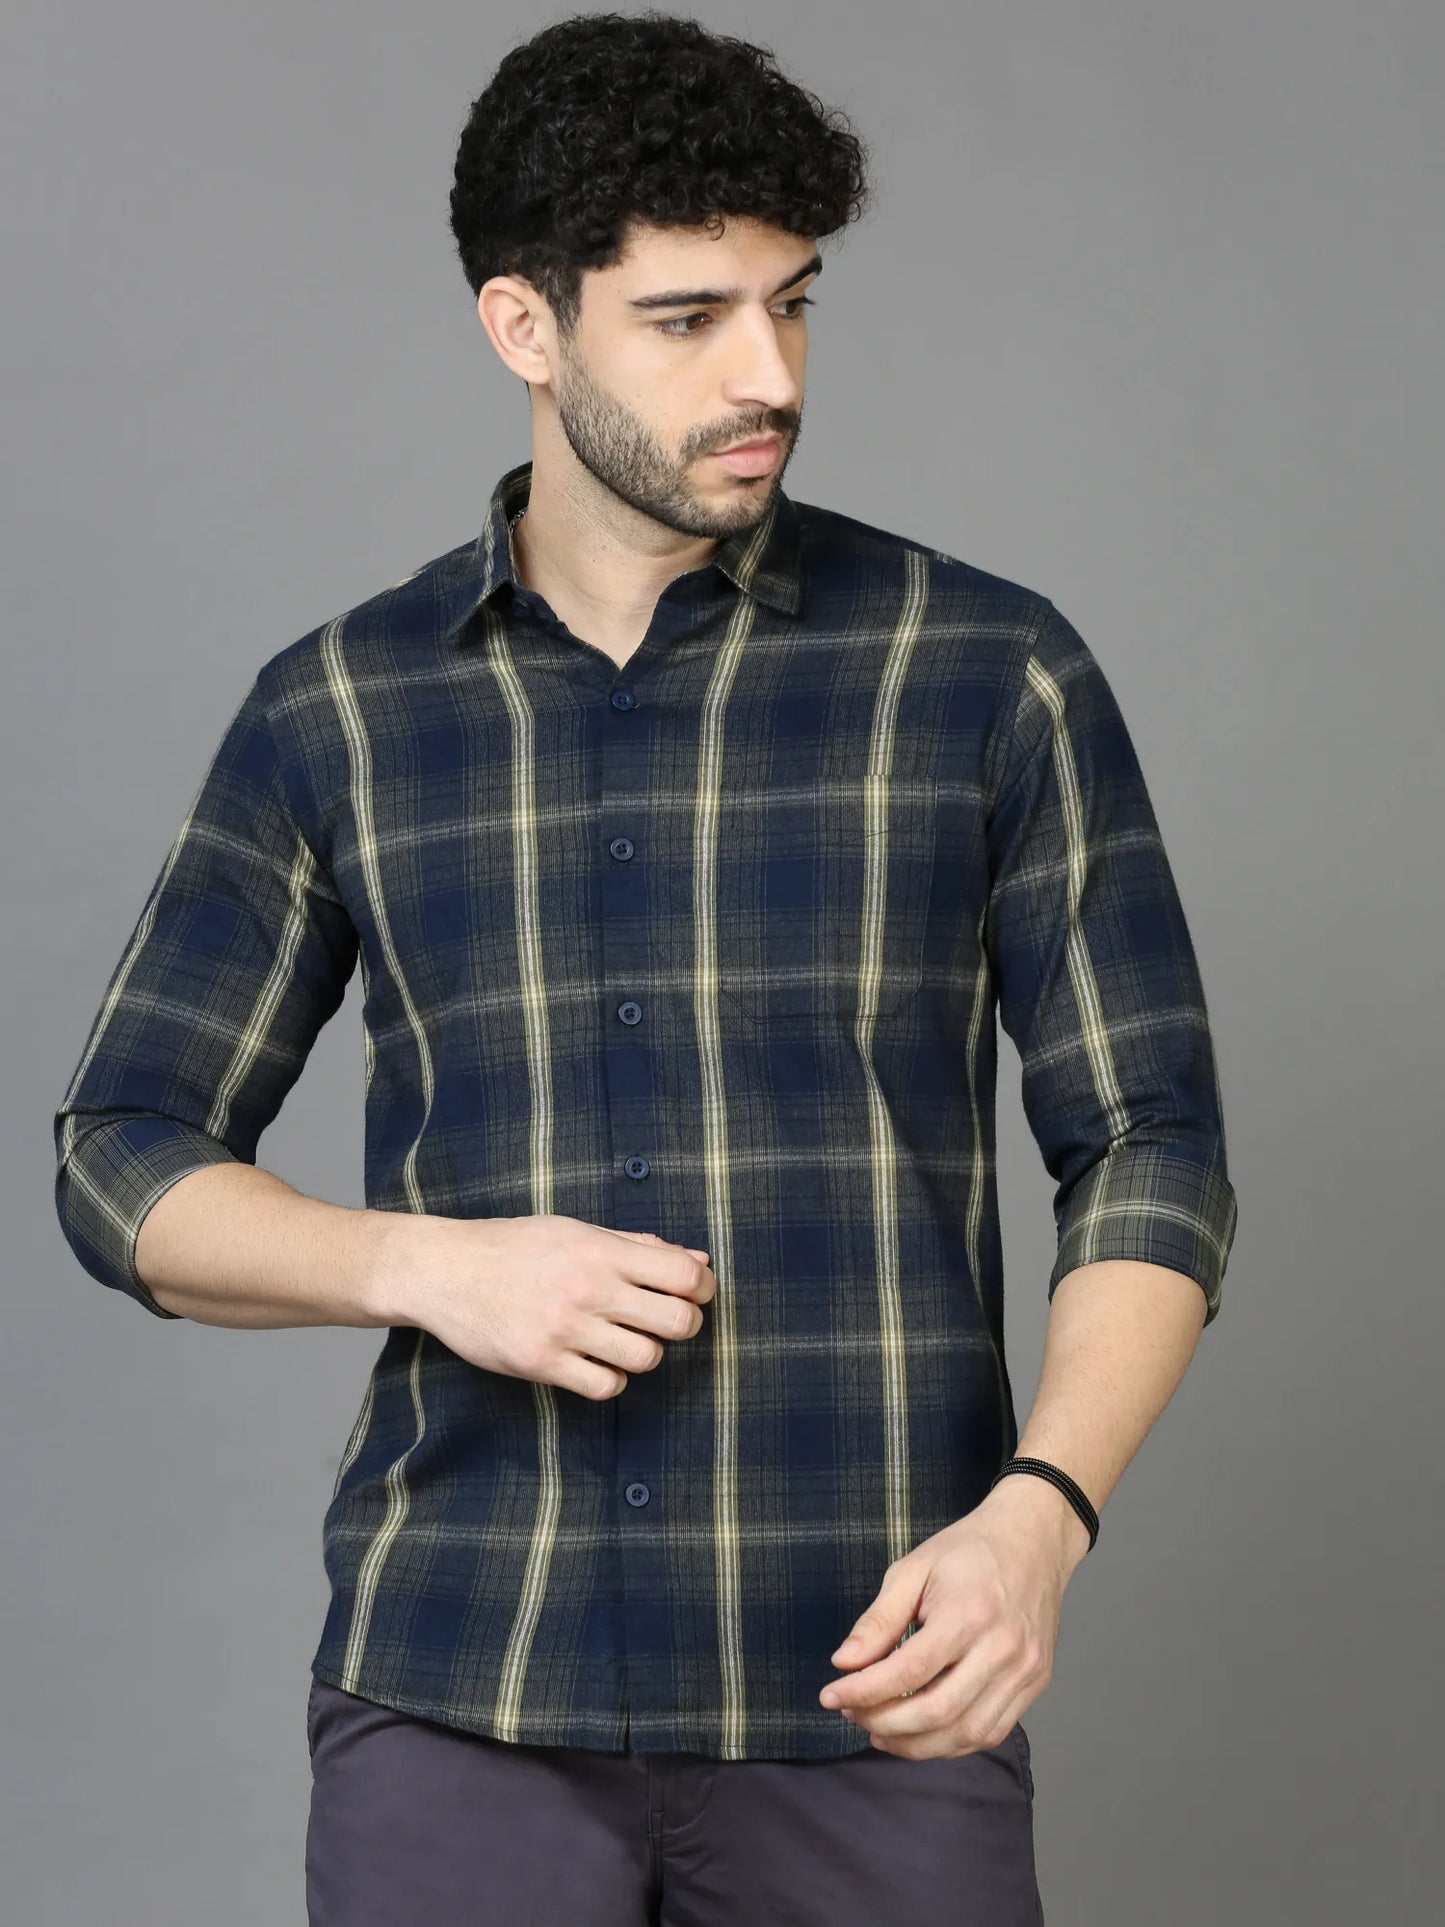 Dark Aesthetic Blue Checkered Shirt  for Men 